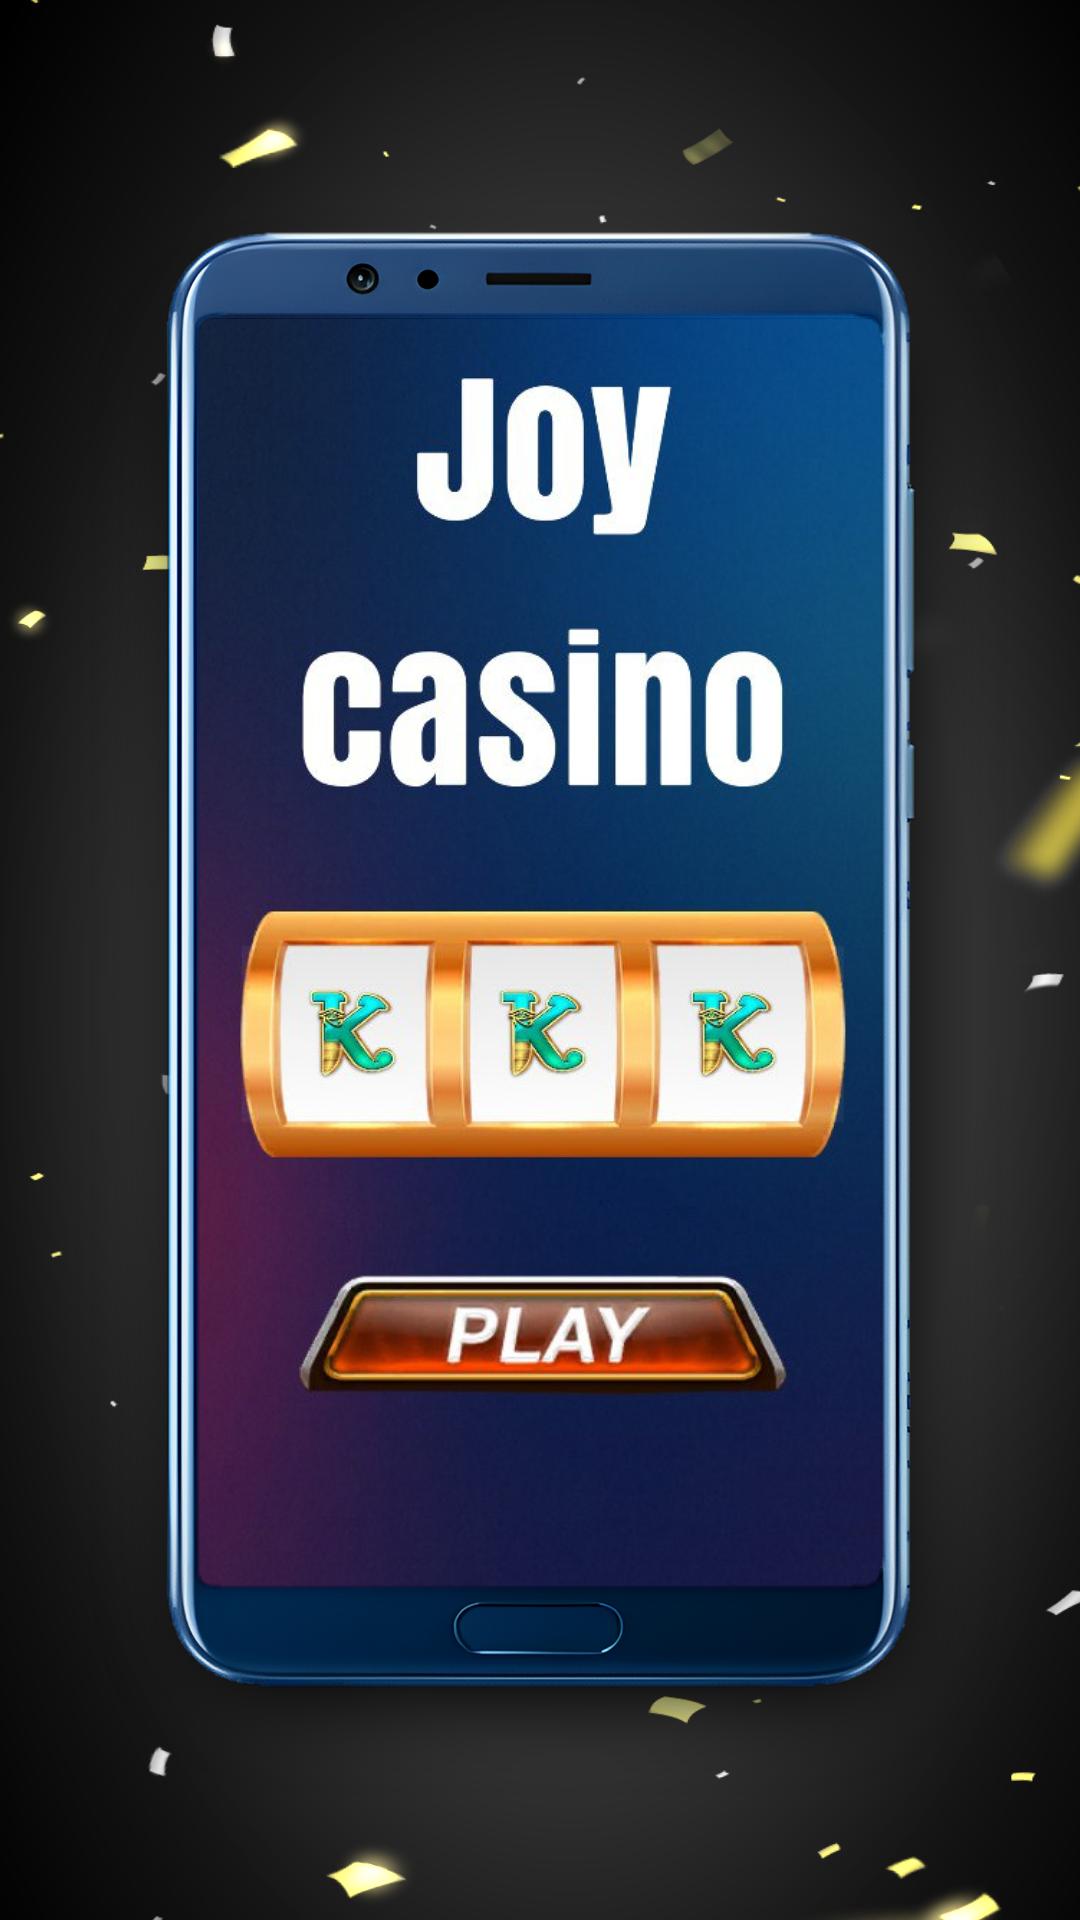 Joy casino casinos joy shop